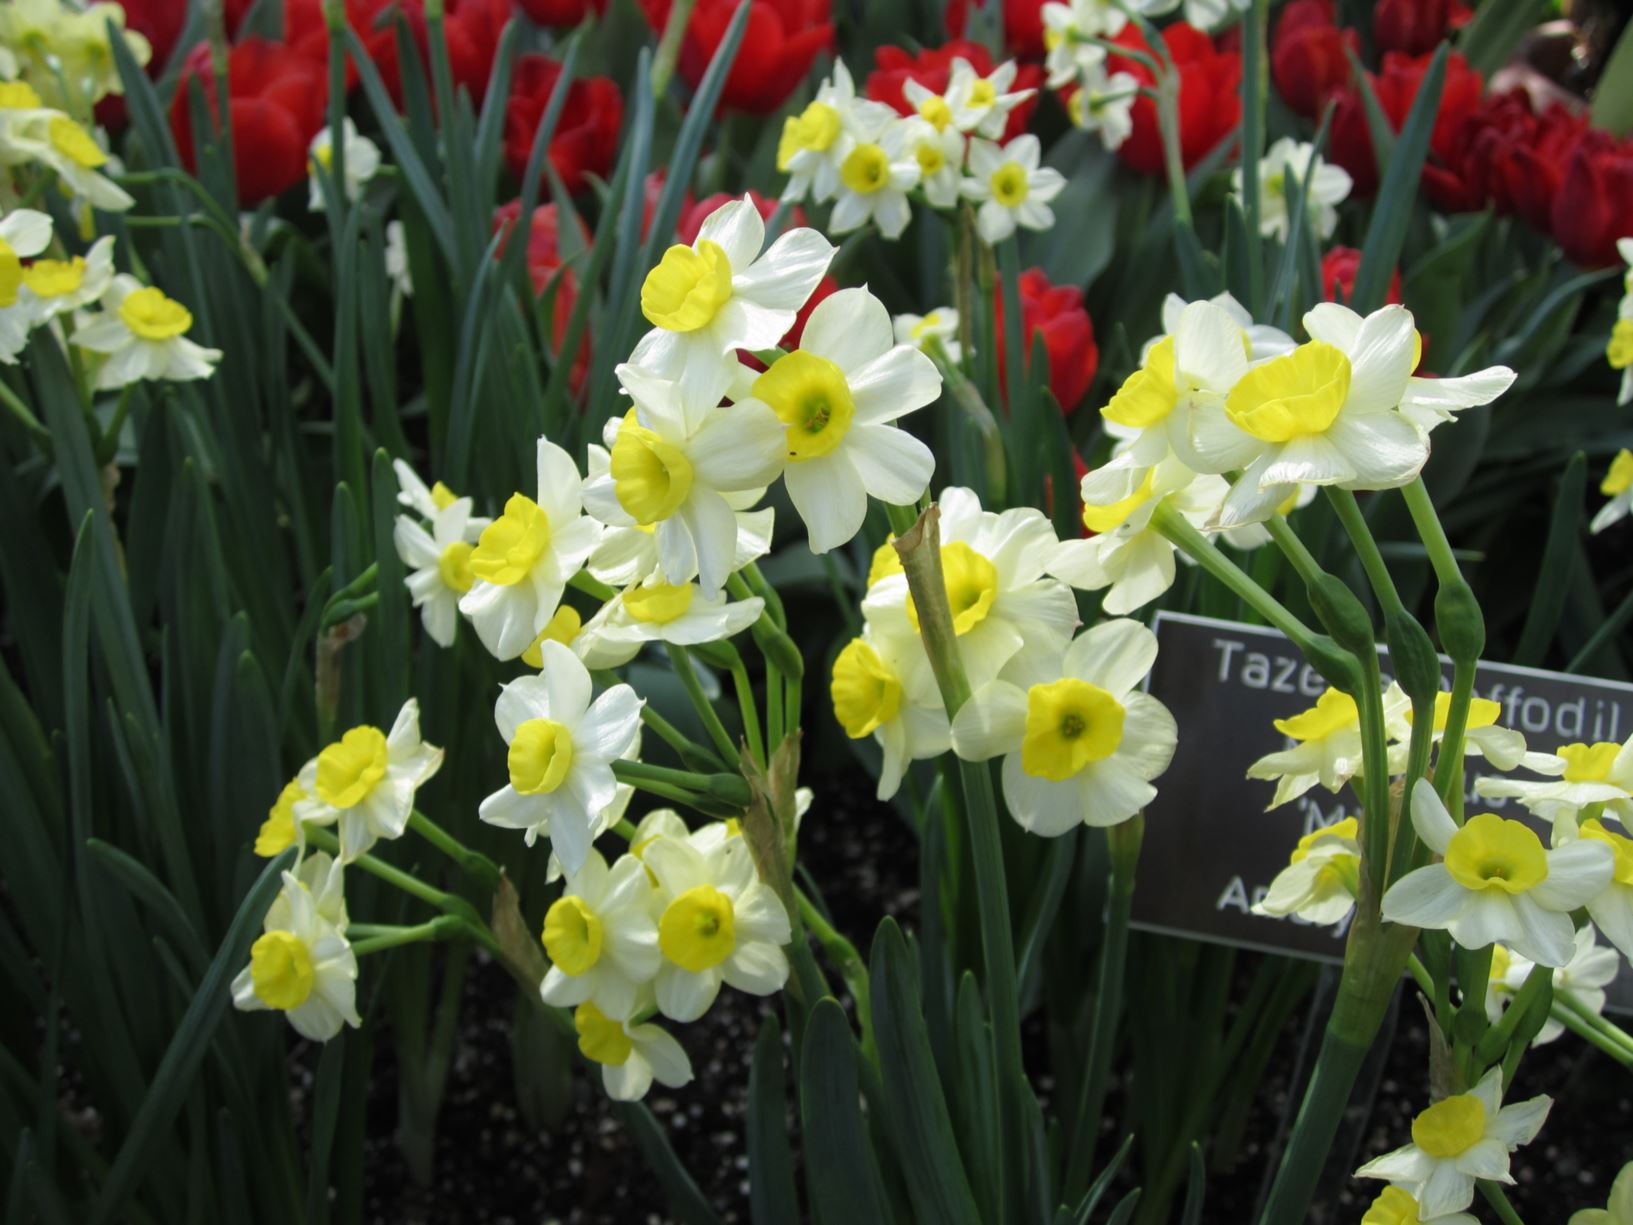 Narcissus 'Minnow' - tazetta daffodil